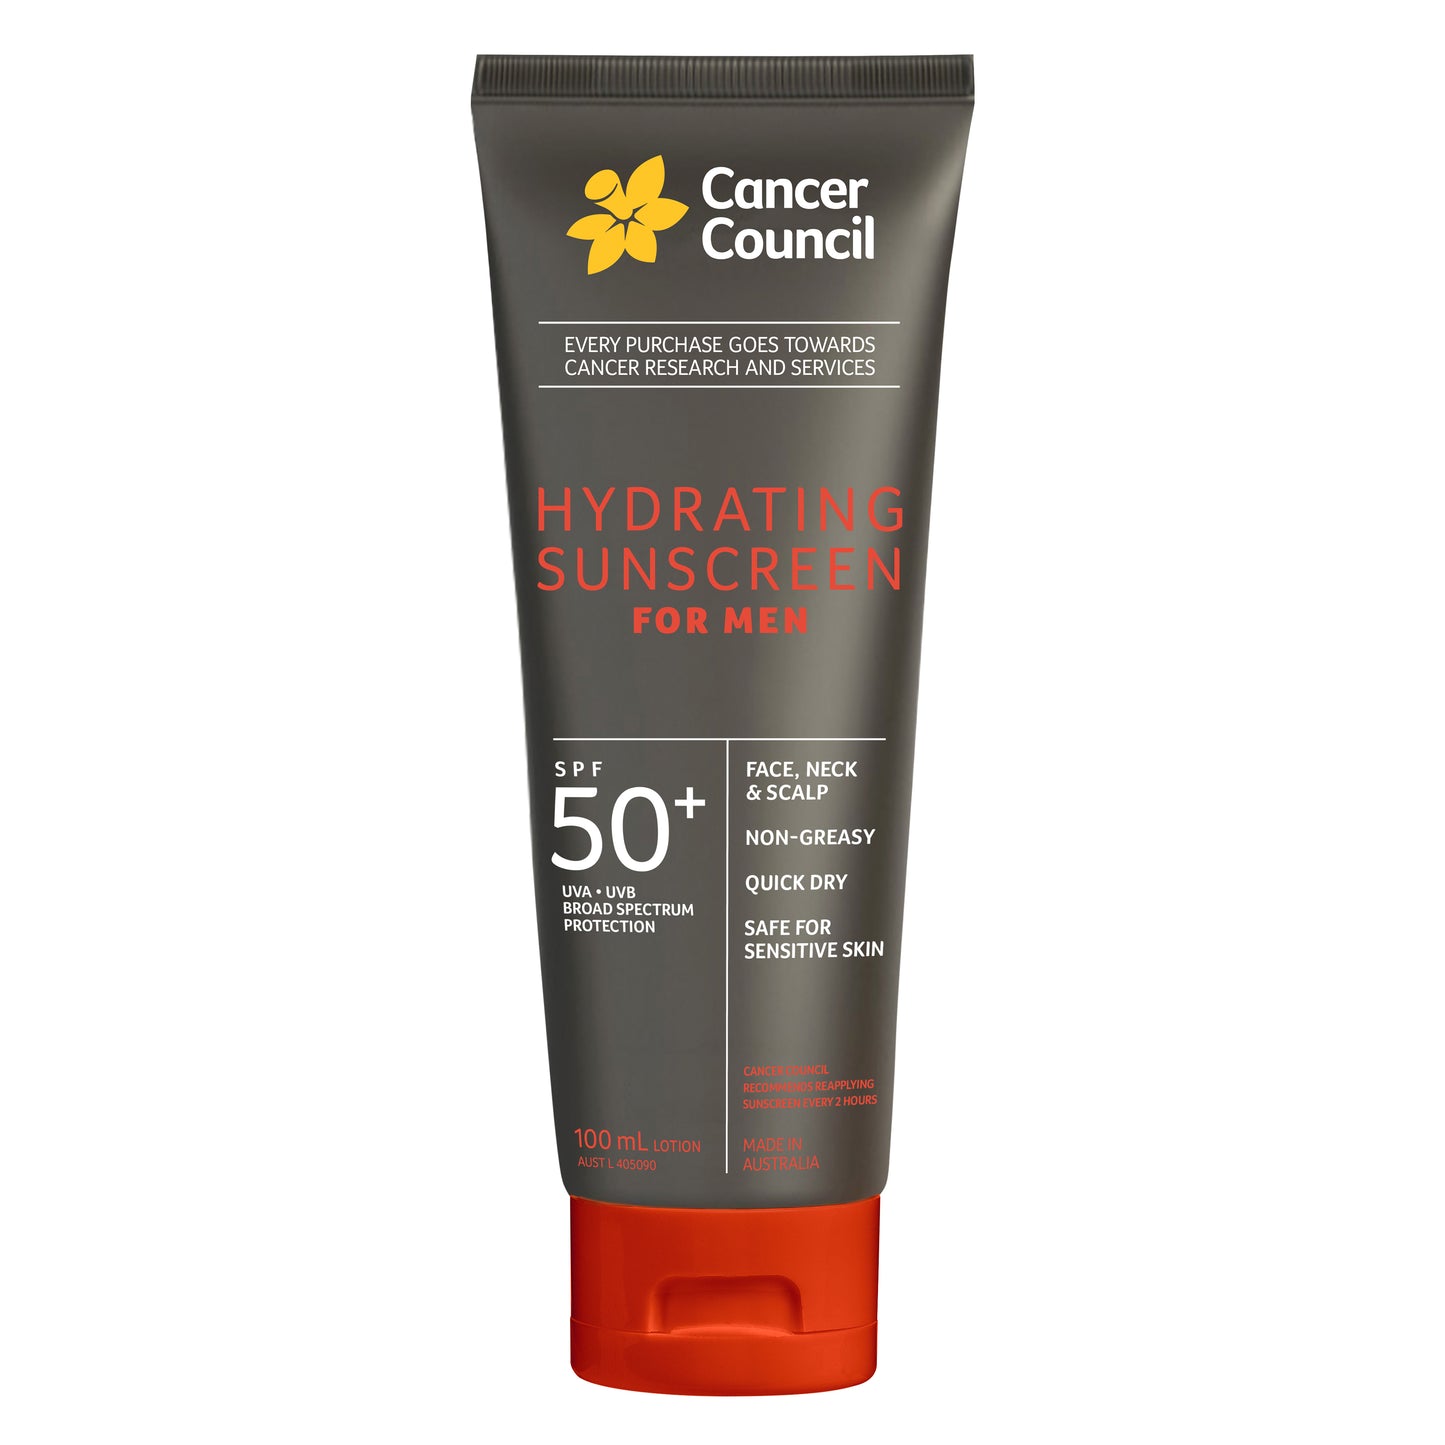 Hydrating Sunscreen for Men SPF50+